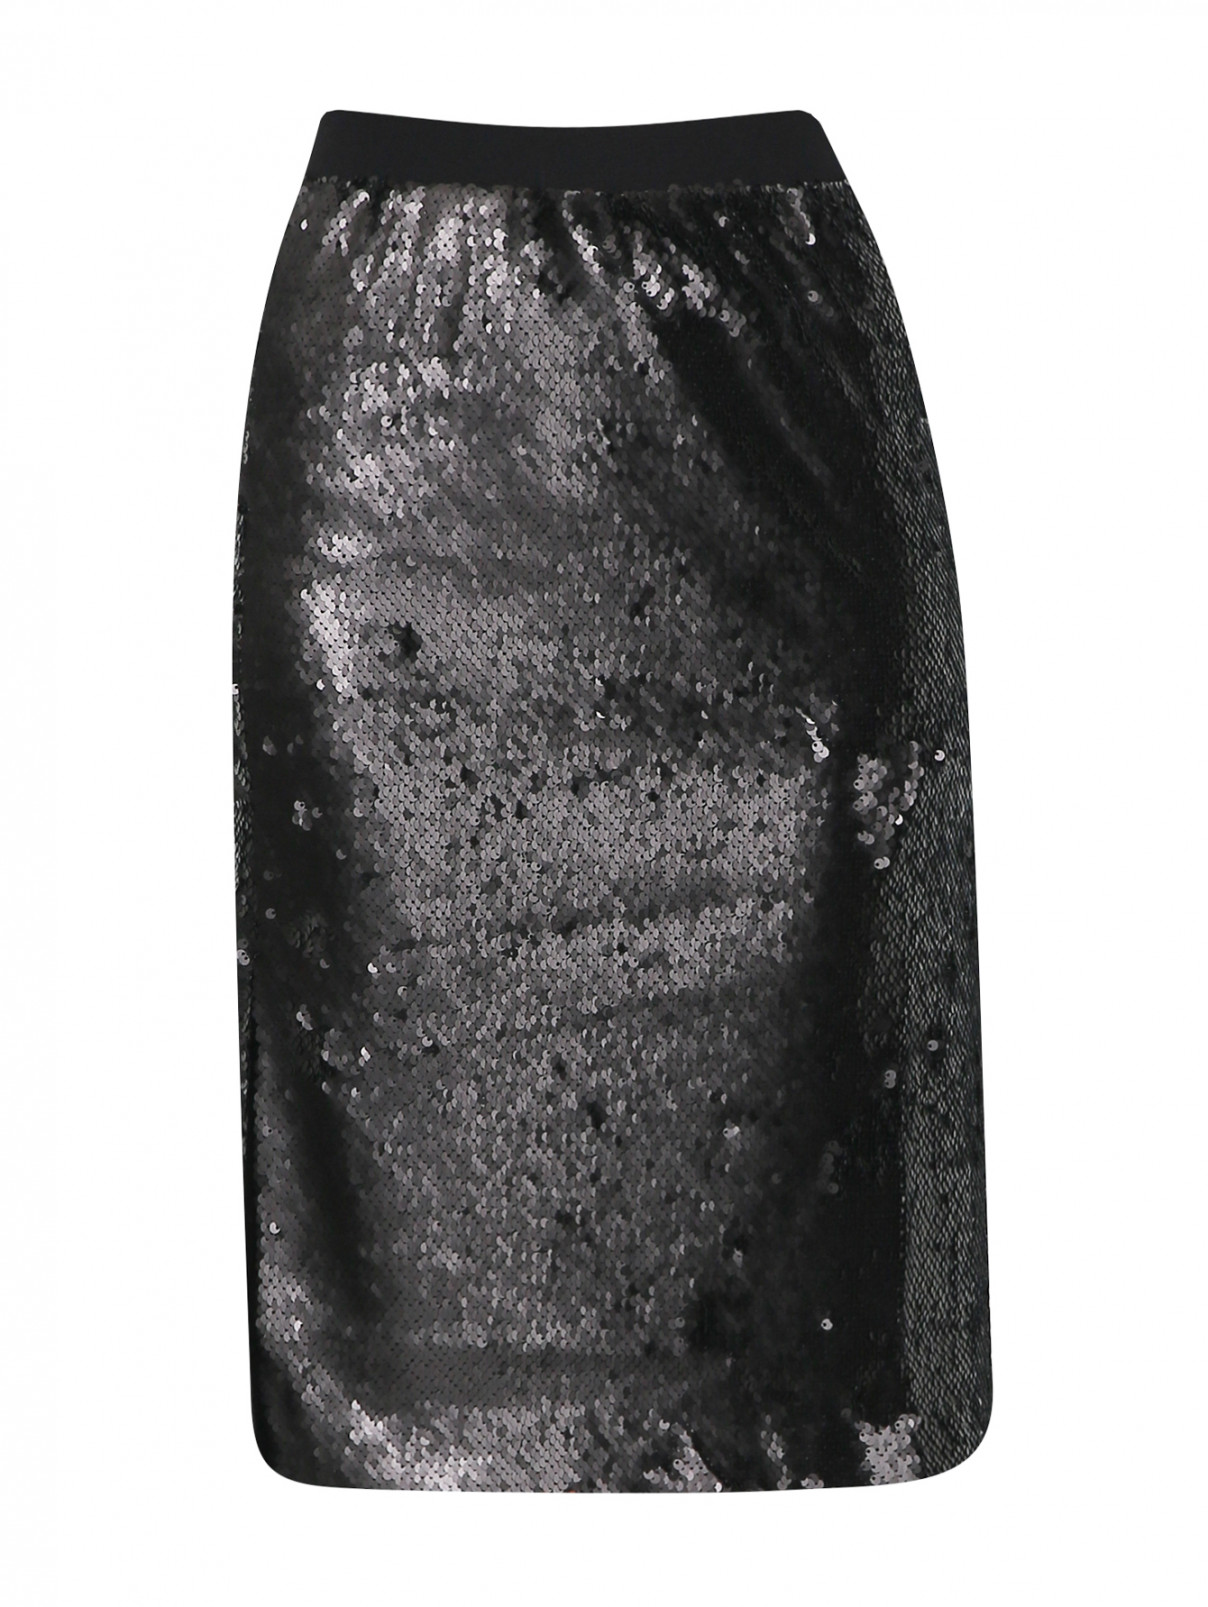 Юбка на резинке декорированная пайетками DESIGNERS REMIX  –  Общий вид  – Цвет:  Черный